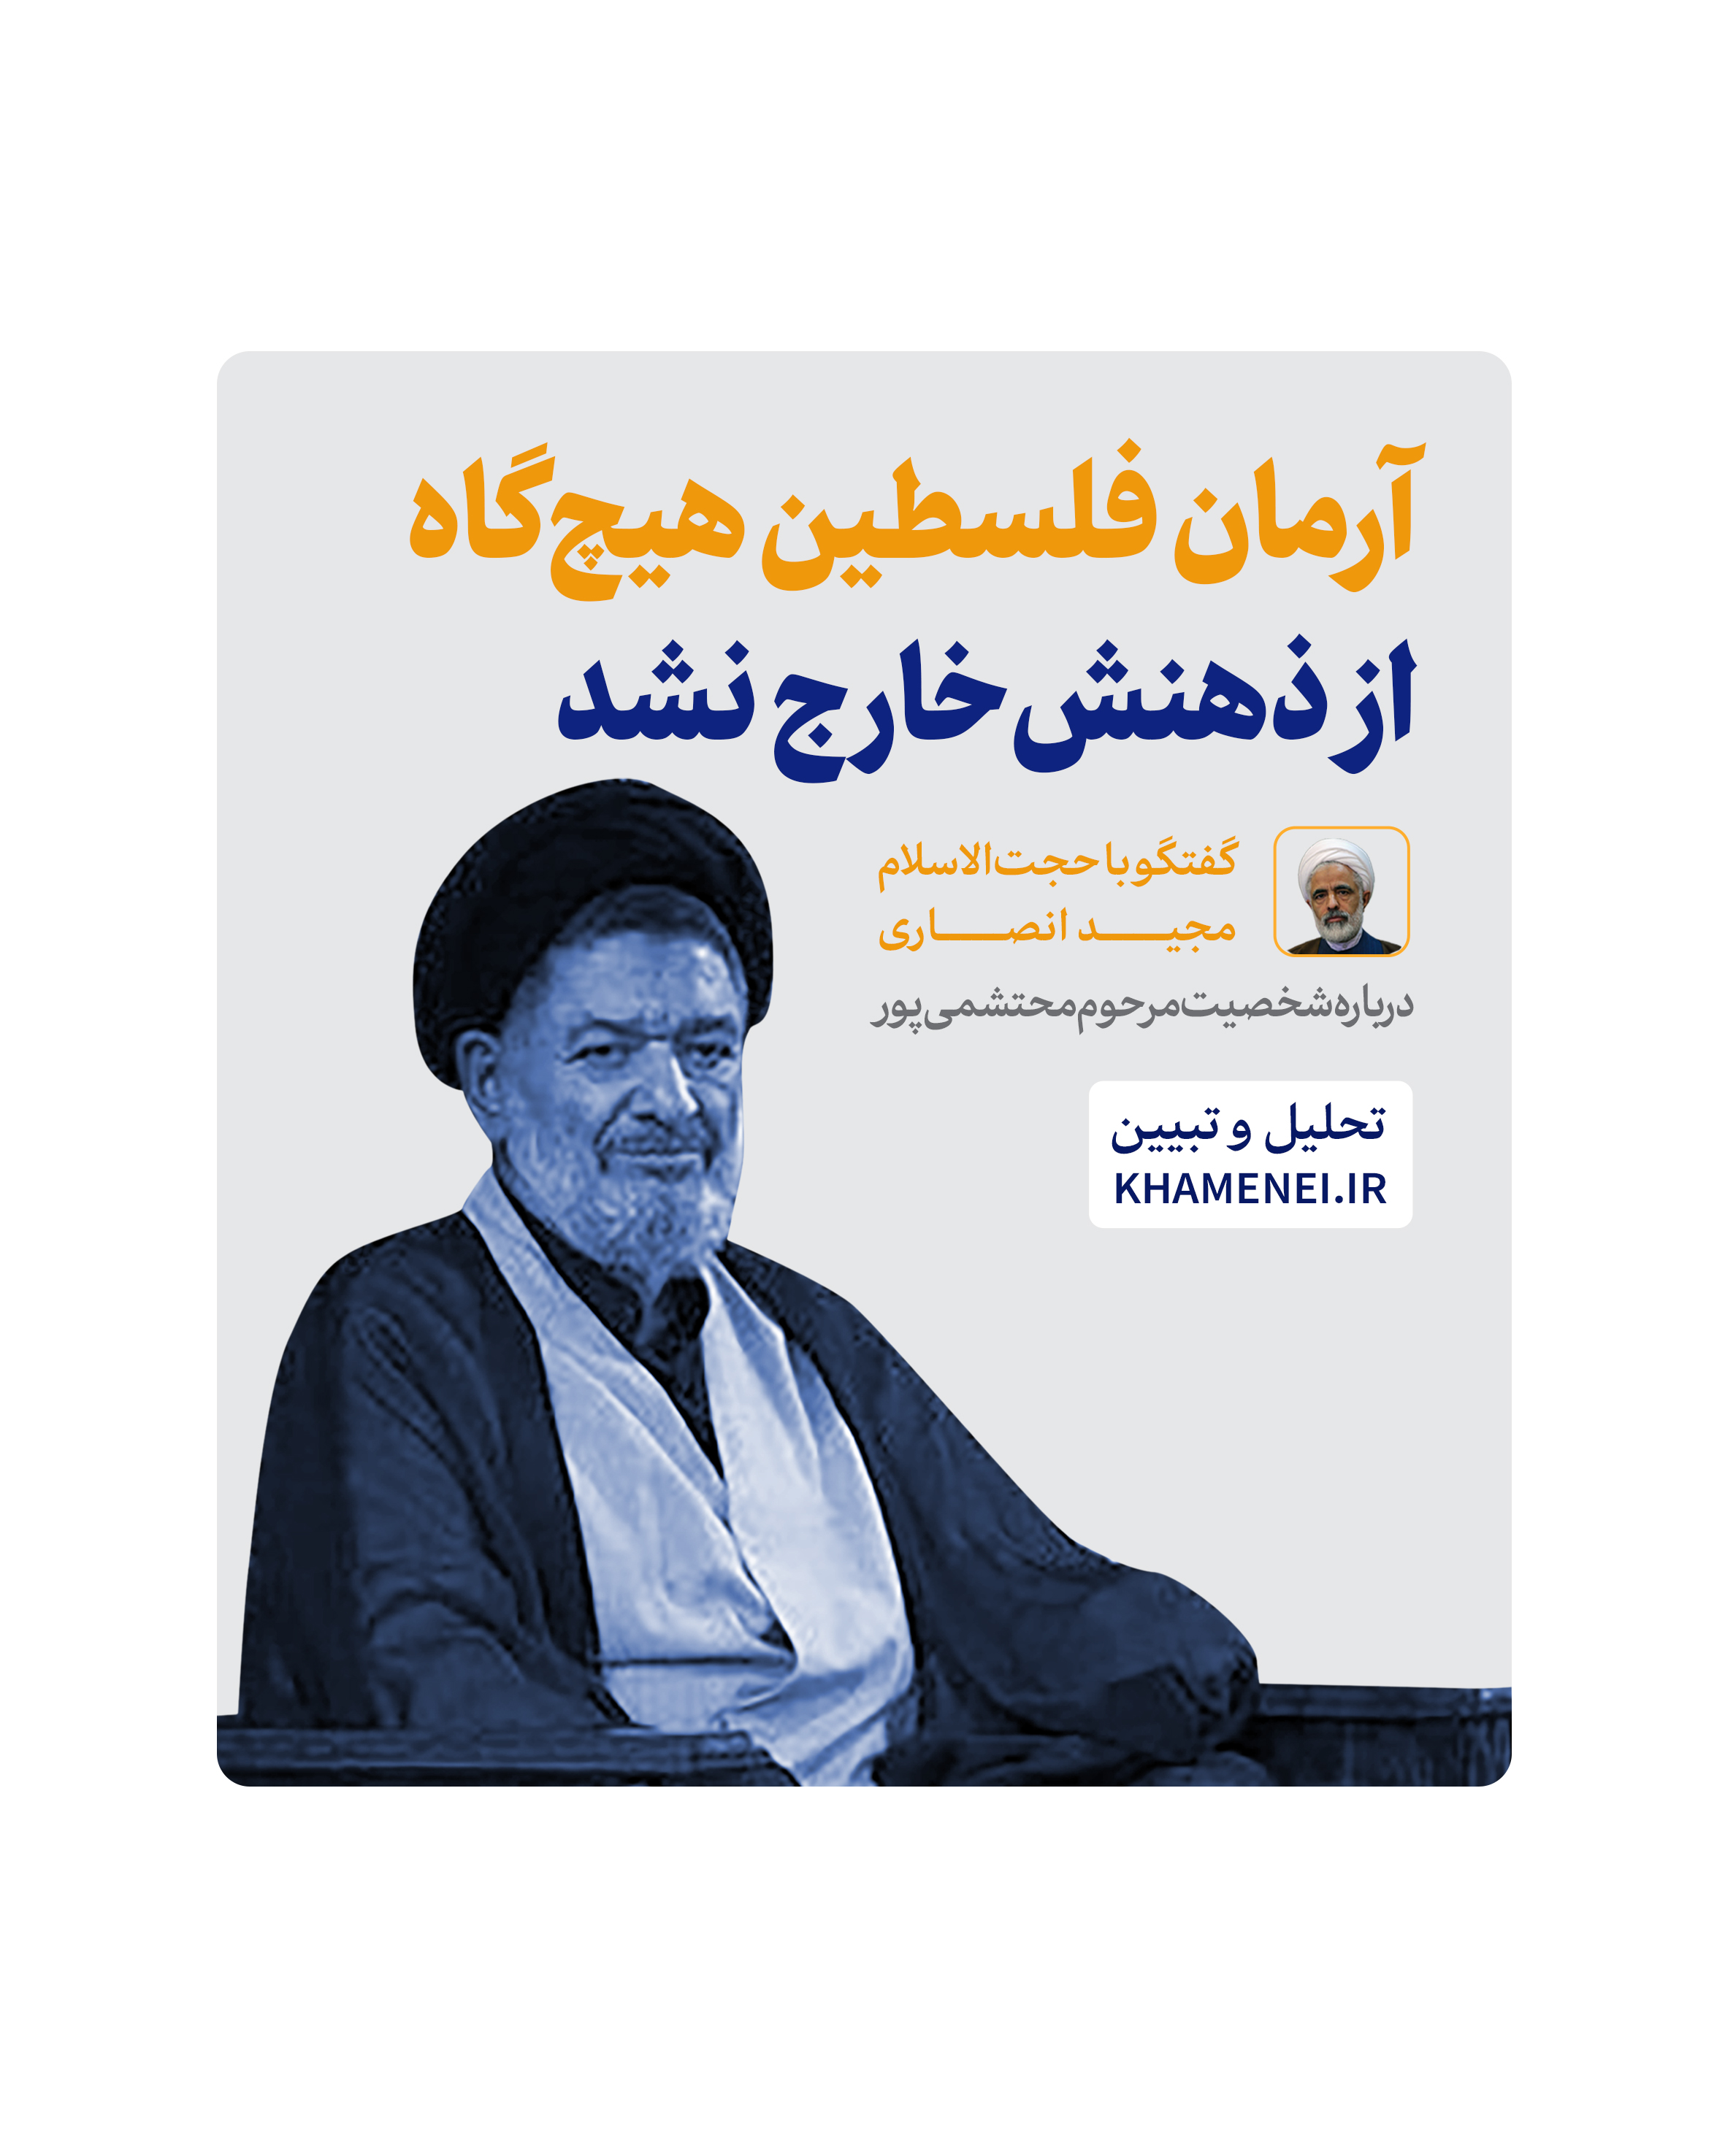 https://idc0-cdn0.khamenei.ir/ndata/news/48130/cover%20(3).jpg